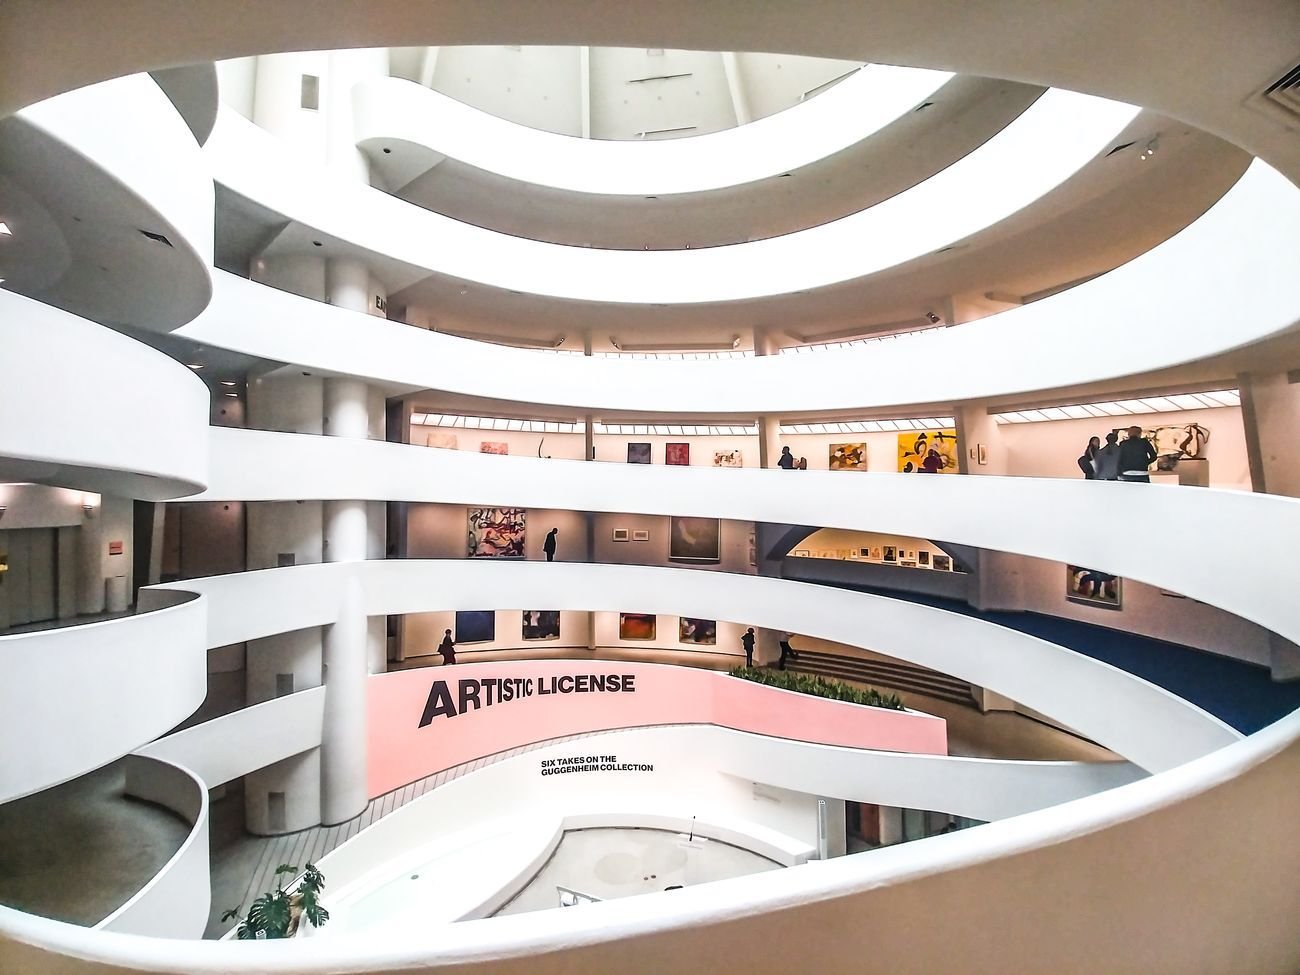 La rampa a spirale del Guggenheim di New York allestita per la mostra “Artistic License”. Photo Maurita Cardone